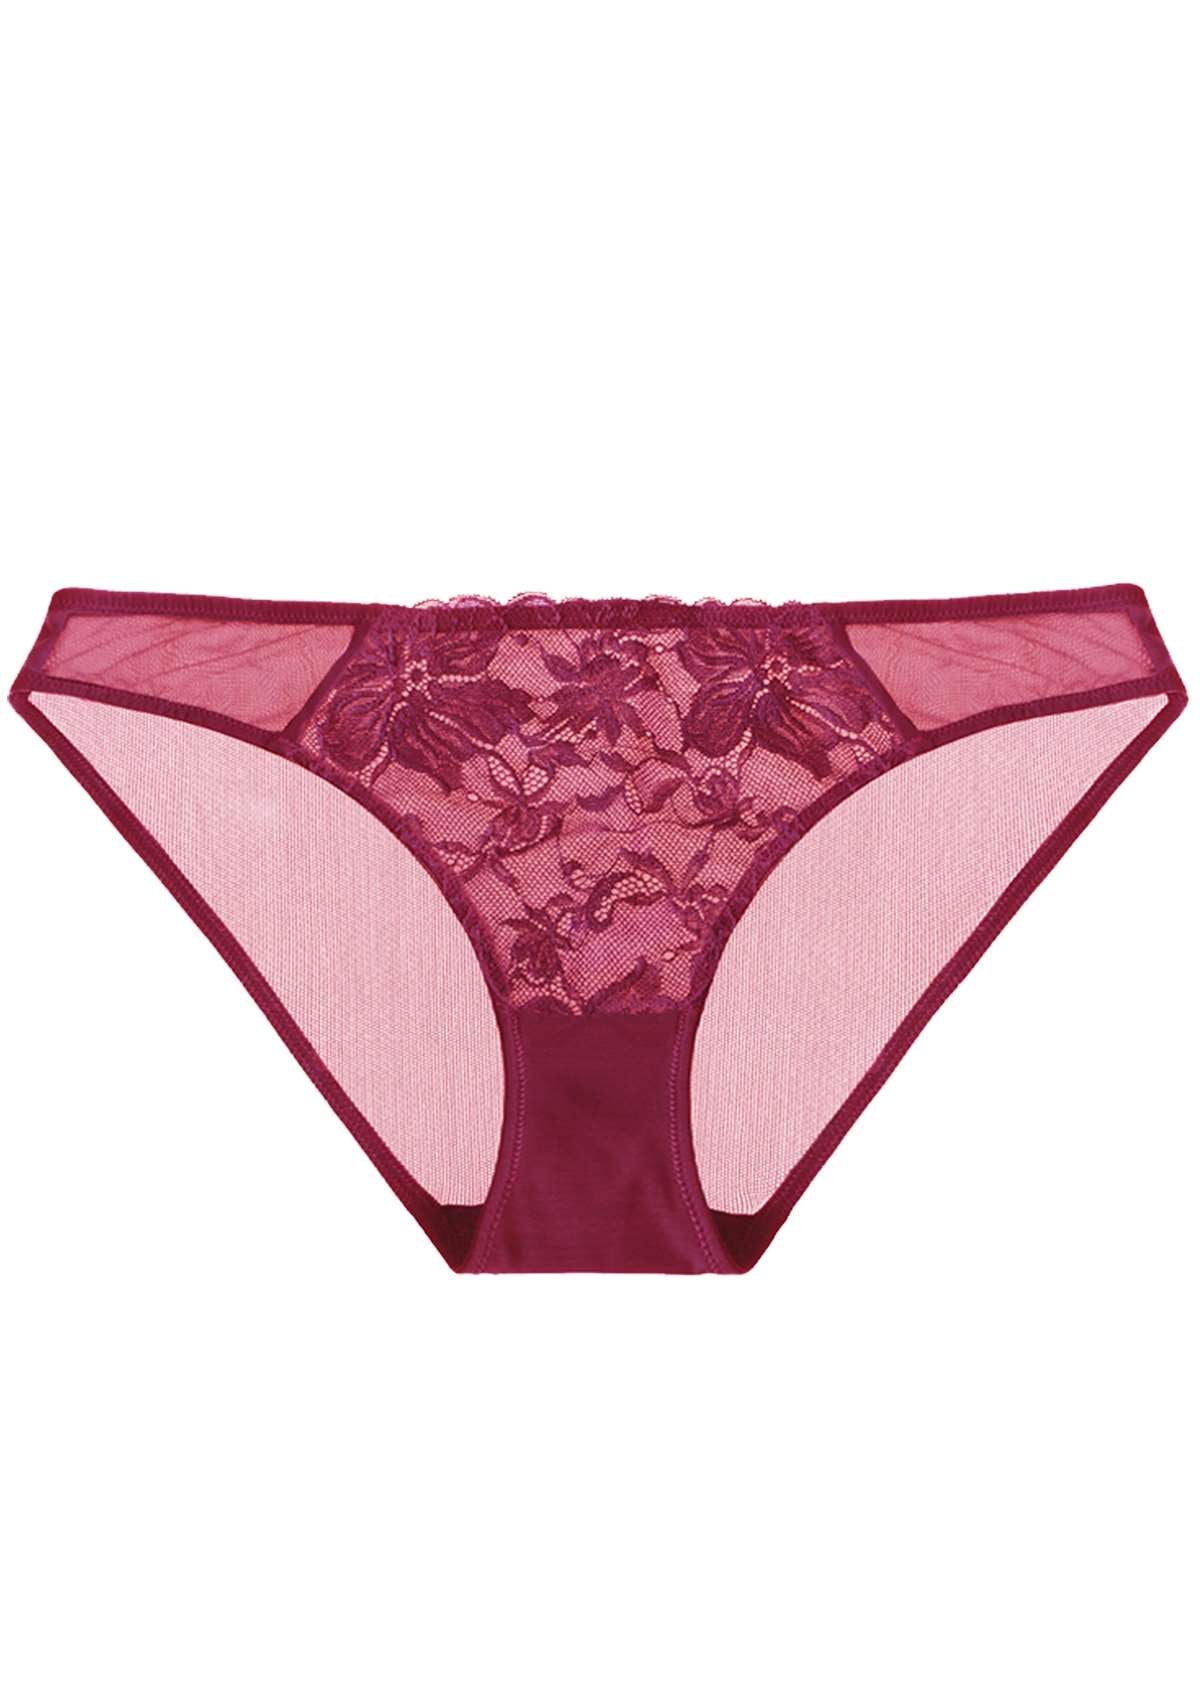 HSIA Breathable Sexy Feminine Lace Mesh Bikini Underwear - L / Red